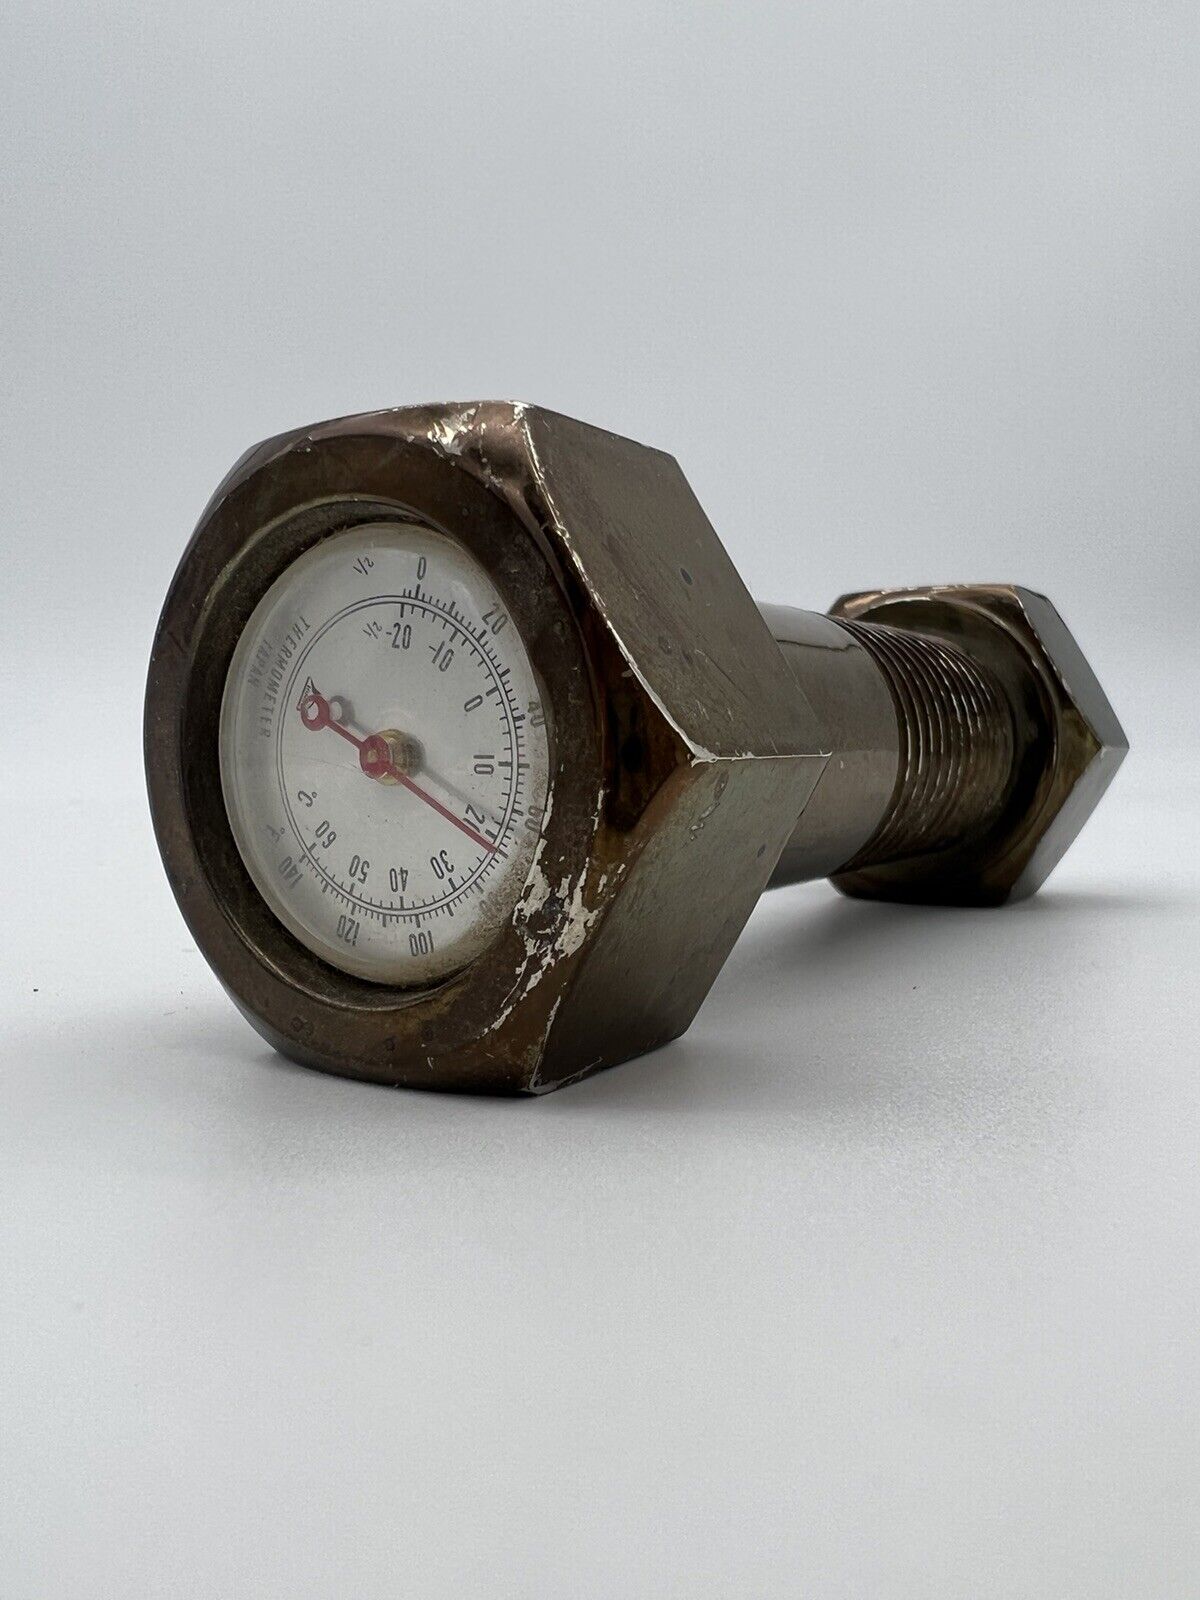 Vintage Nut & Bolt Thermometer Made In Japan Desk Decor